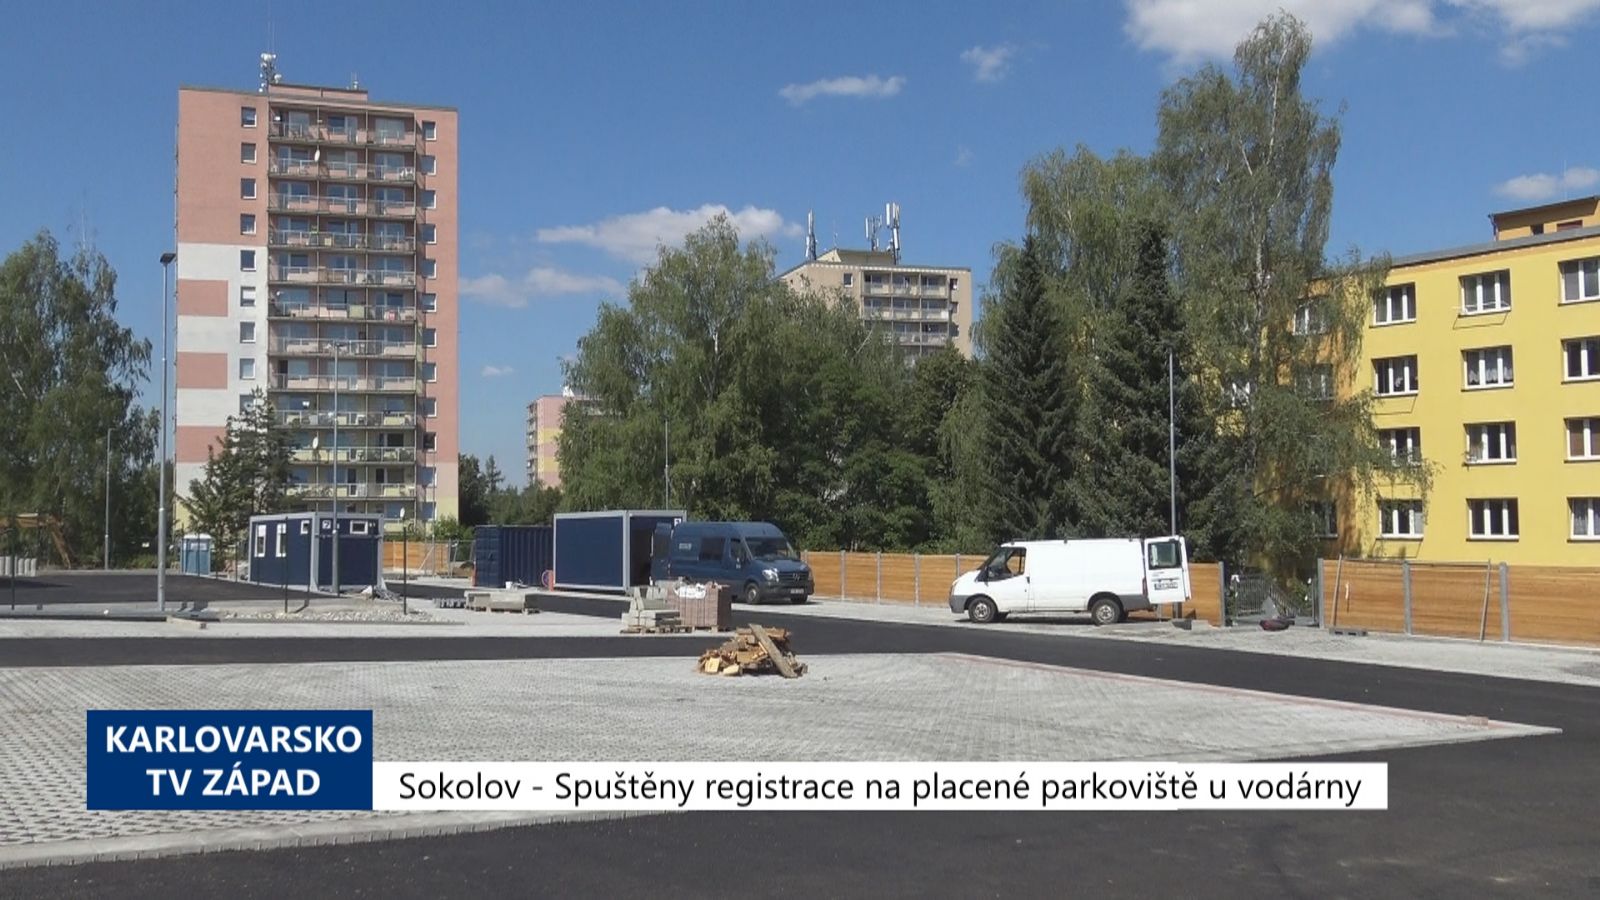 Sokolov: Spuštěny registrace na placené parkoviště u vodárny (TV Západ)